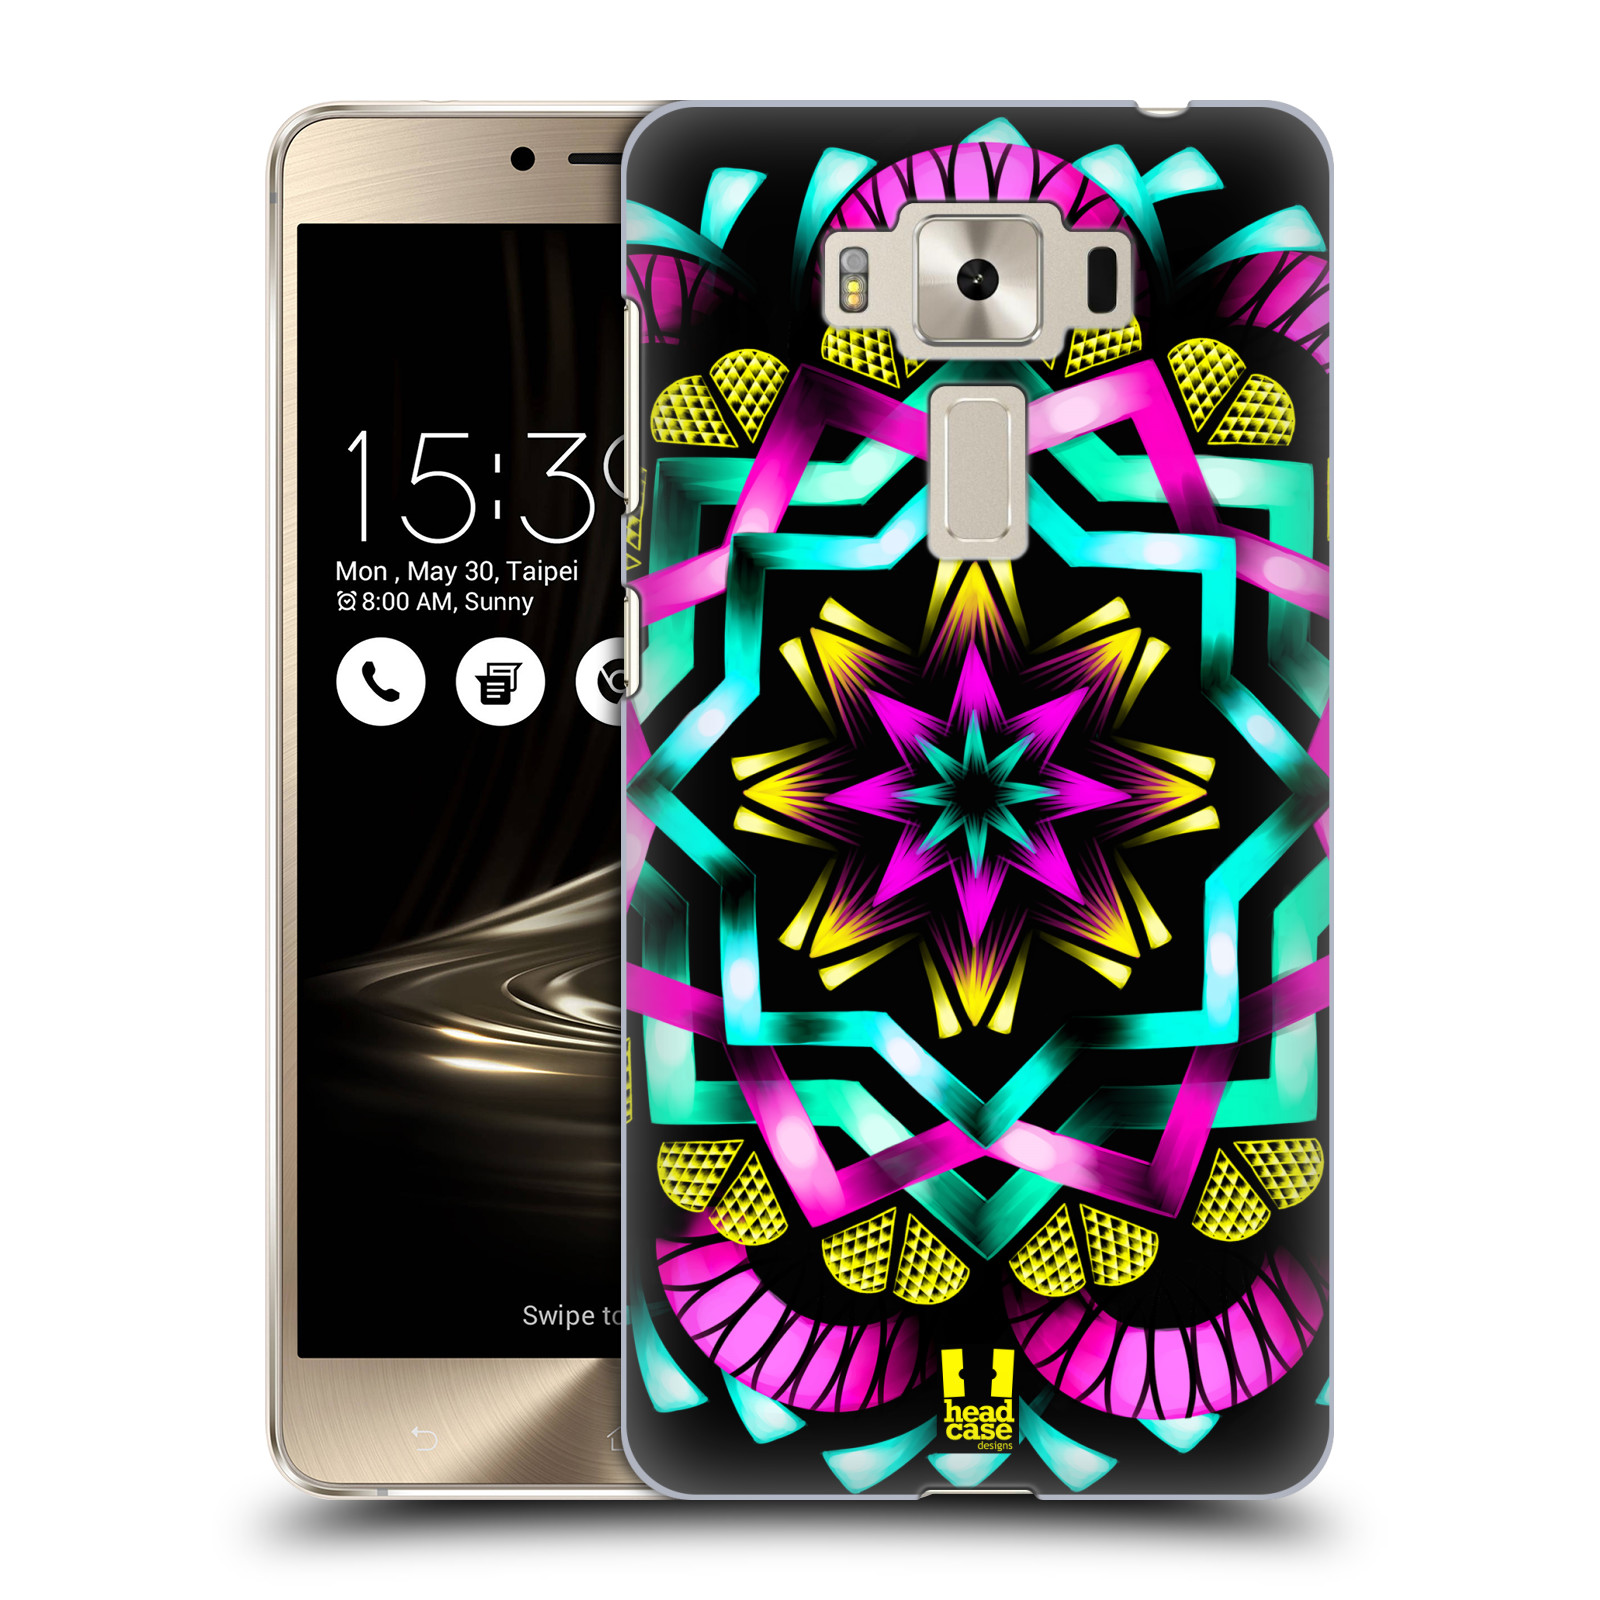 HEAD CASE plastový obal na mobil Asus Zenfone 3 DELUXE ZS550KL vzor Indie Mandala kaleidoskop barevný vzor SLUNCE